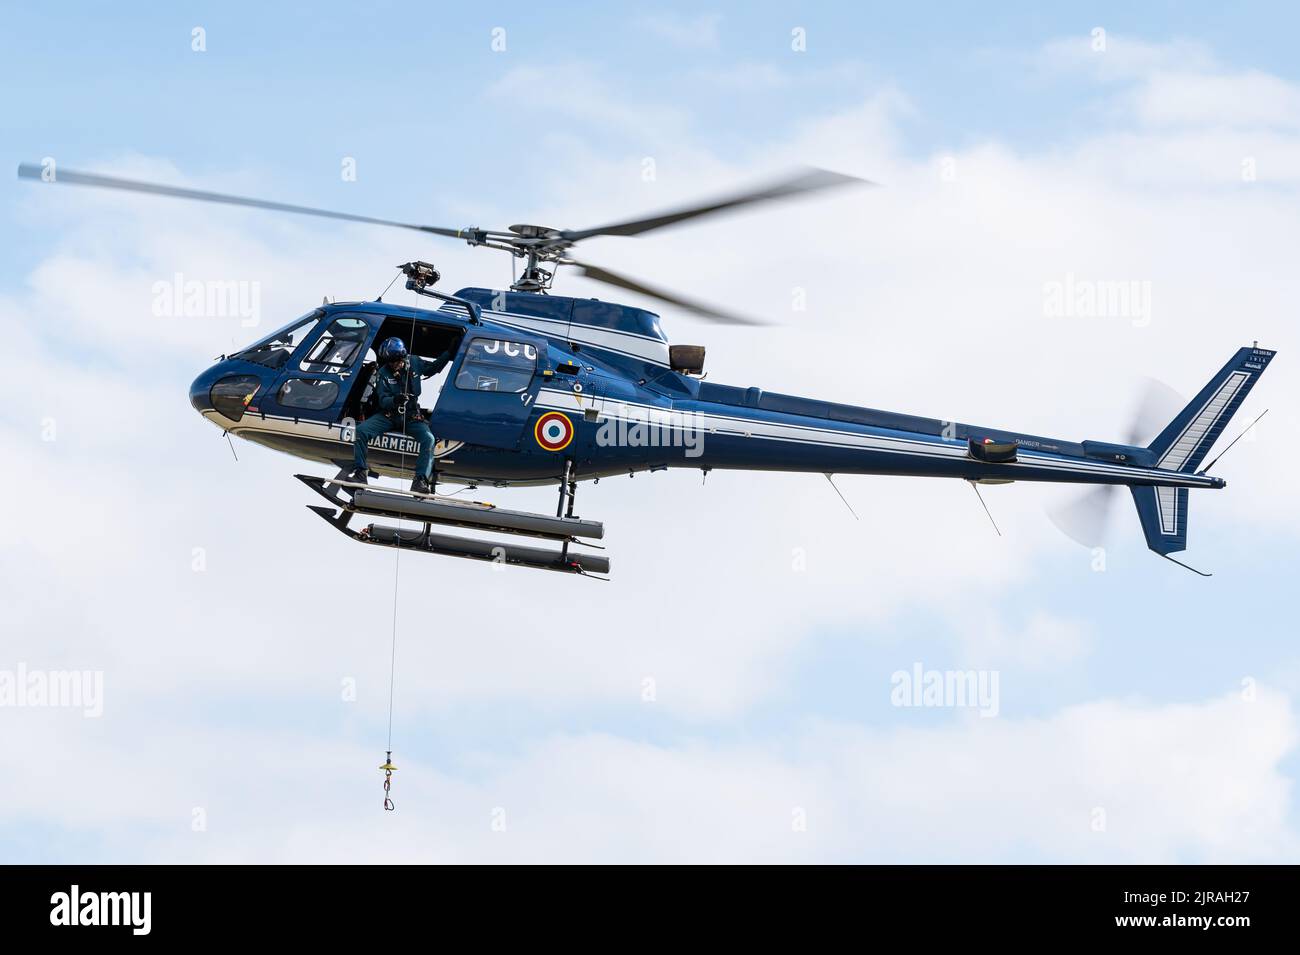 Ein Eurocopter AS350 Écureuil Polizeihubschrauber der französischen Gendarmerie Nationale. Stockfoto